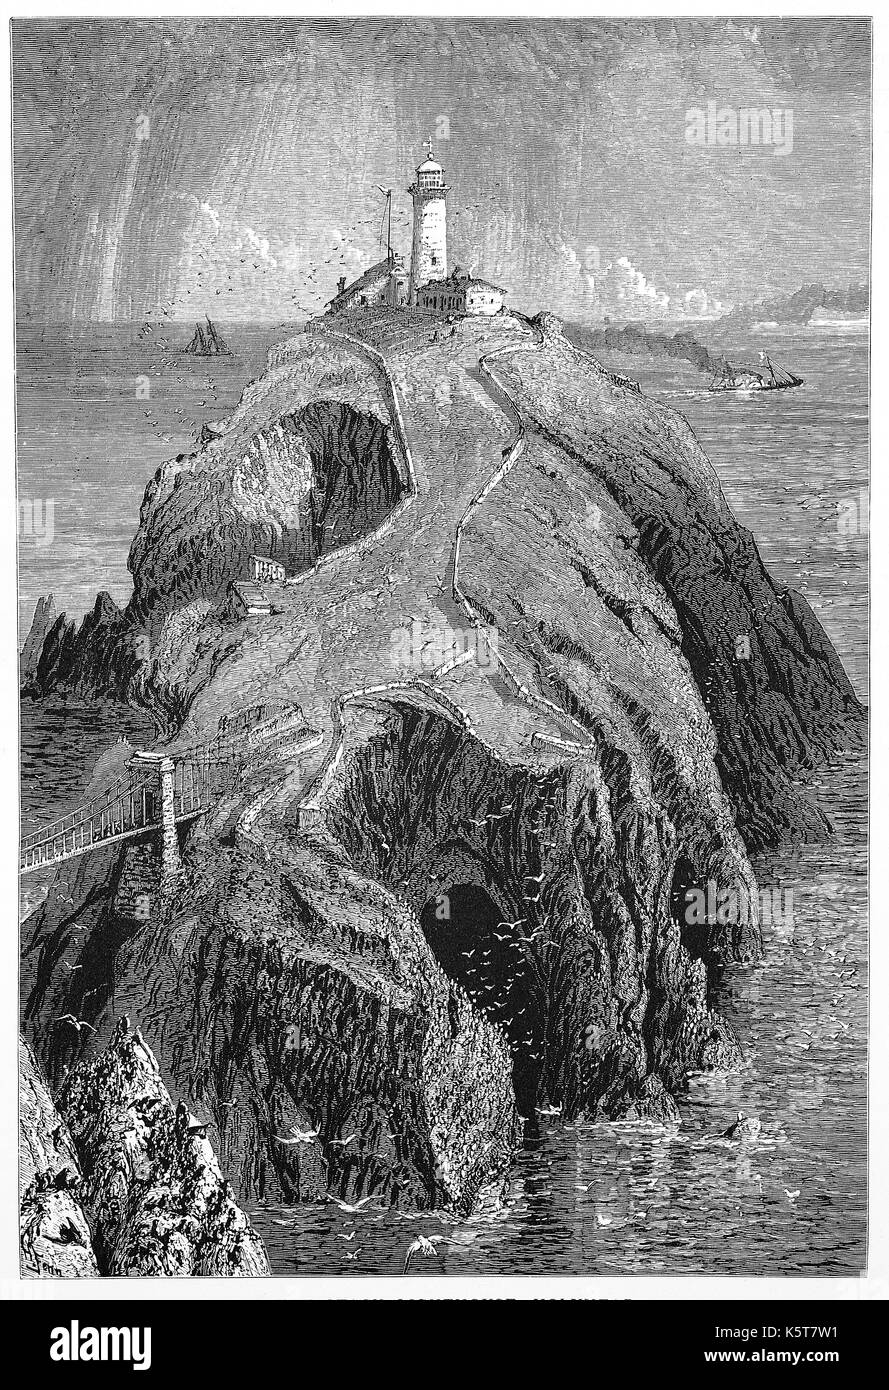 1870: il Sud pila faro fu costruito sulla sommità di una piccola isola a nord-ovest della costa di Isola Santa, Anglesey, Galles. Fu costruita nel 1809 per avvertire le navi delle rocce pericolose di seguito. Foto Stock